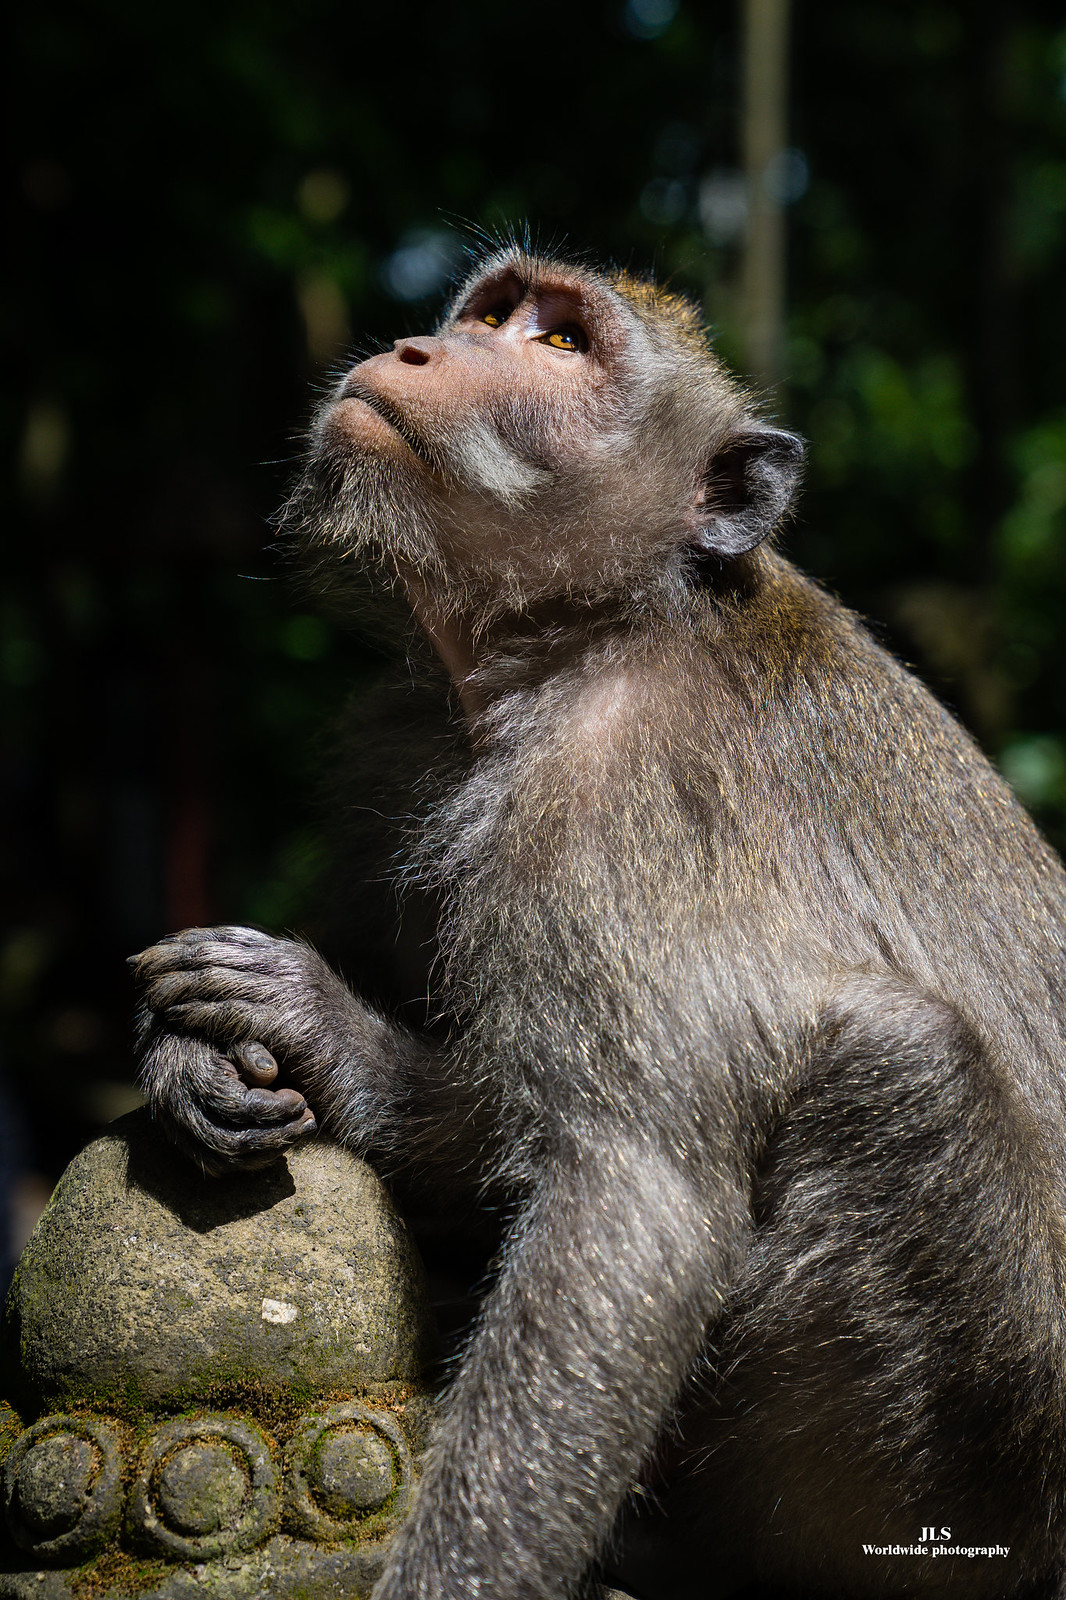 El gran mono pensador de Bali en Fauna y flora49996554868_6b4ef8bae8_h